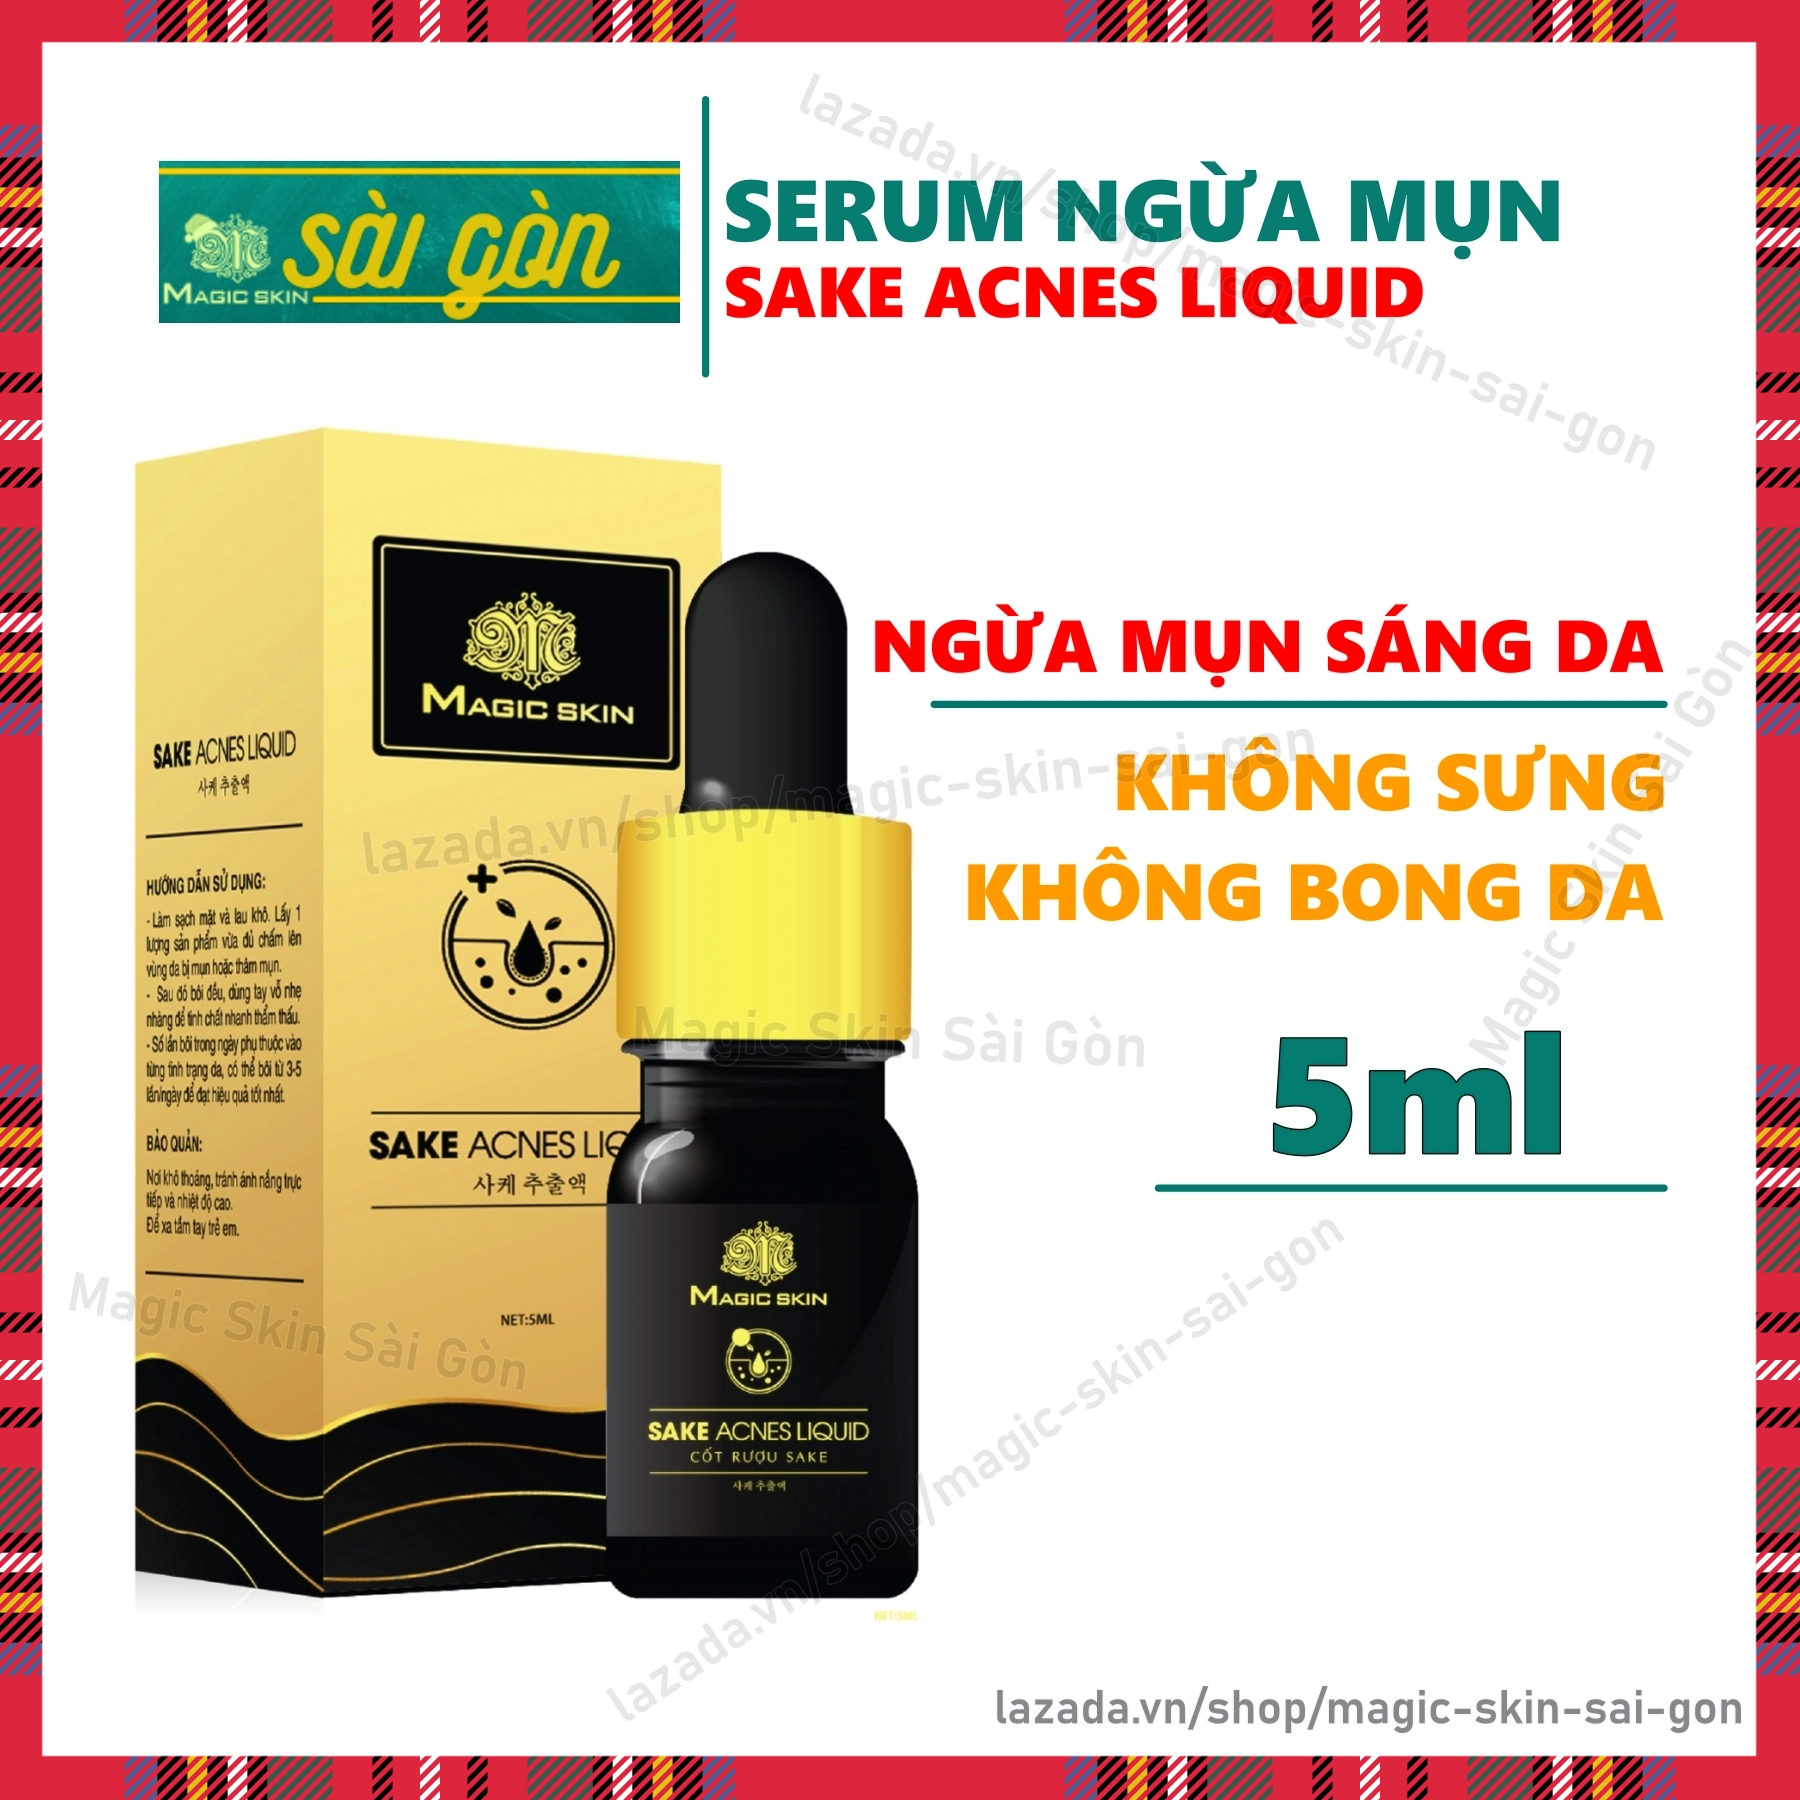 Serum Sake Acnes NGỪA MỤN KHÔNG SƯNG Magic Skin giúp da săn chắc xẹp mụn mờ thâm